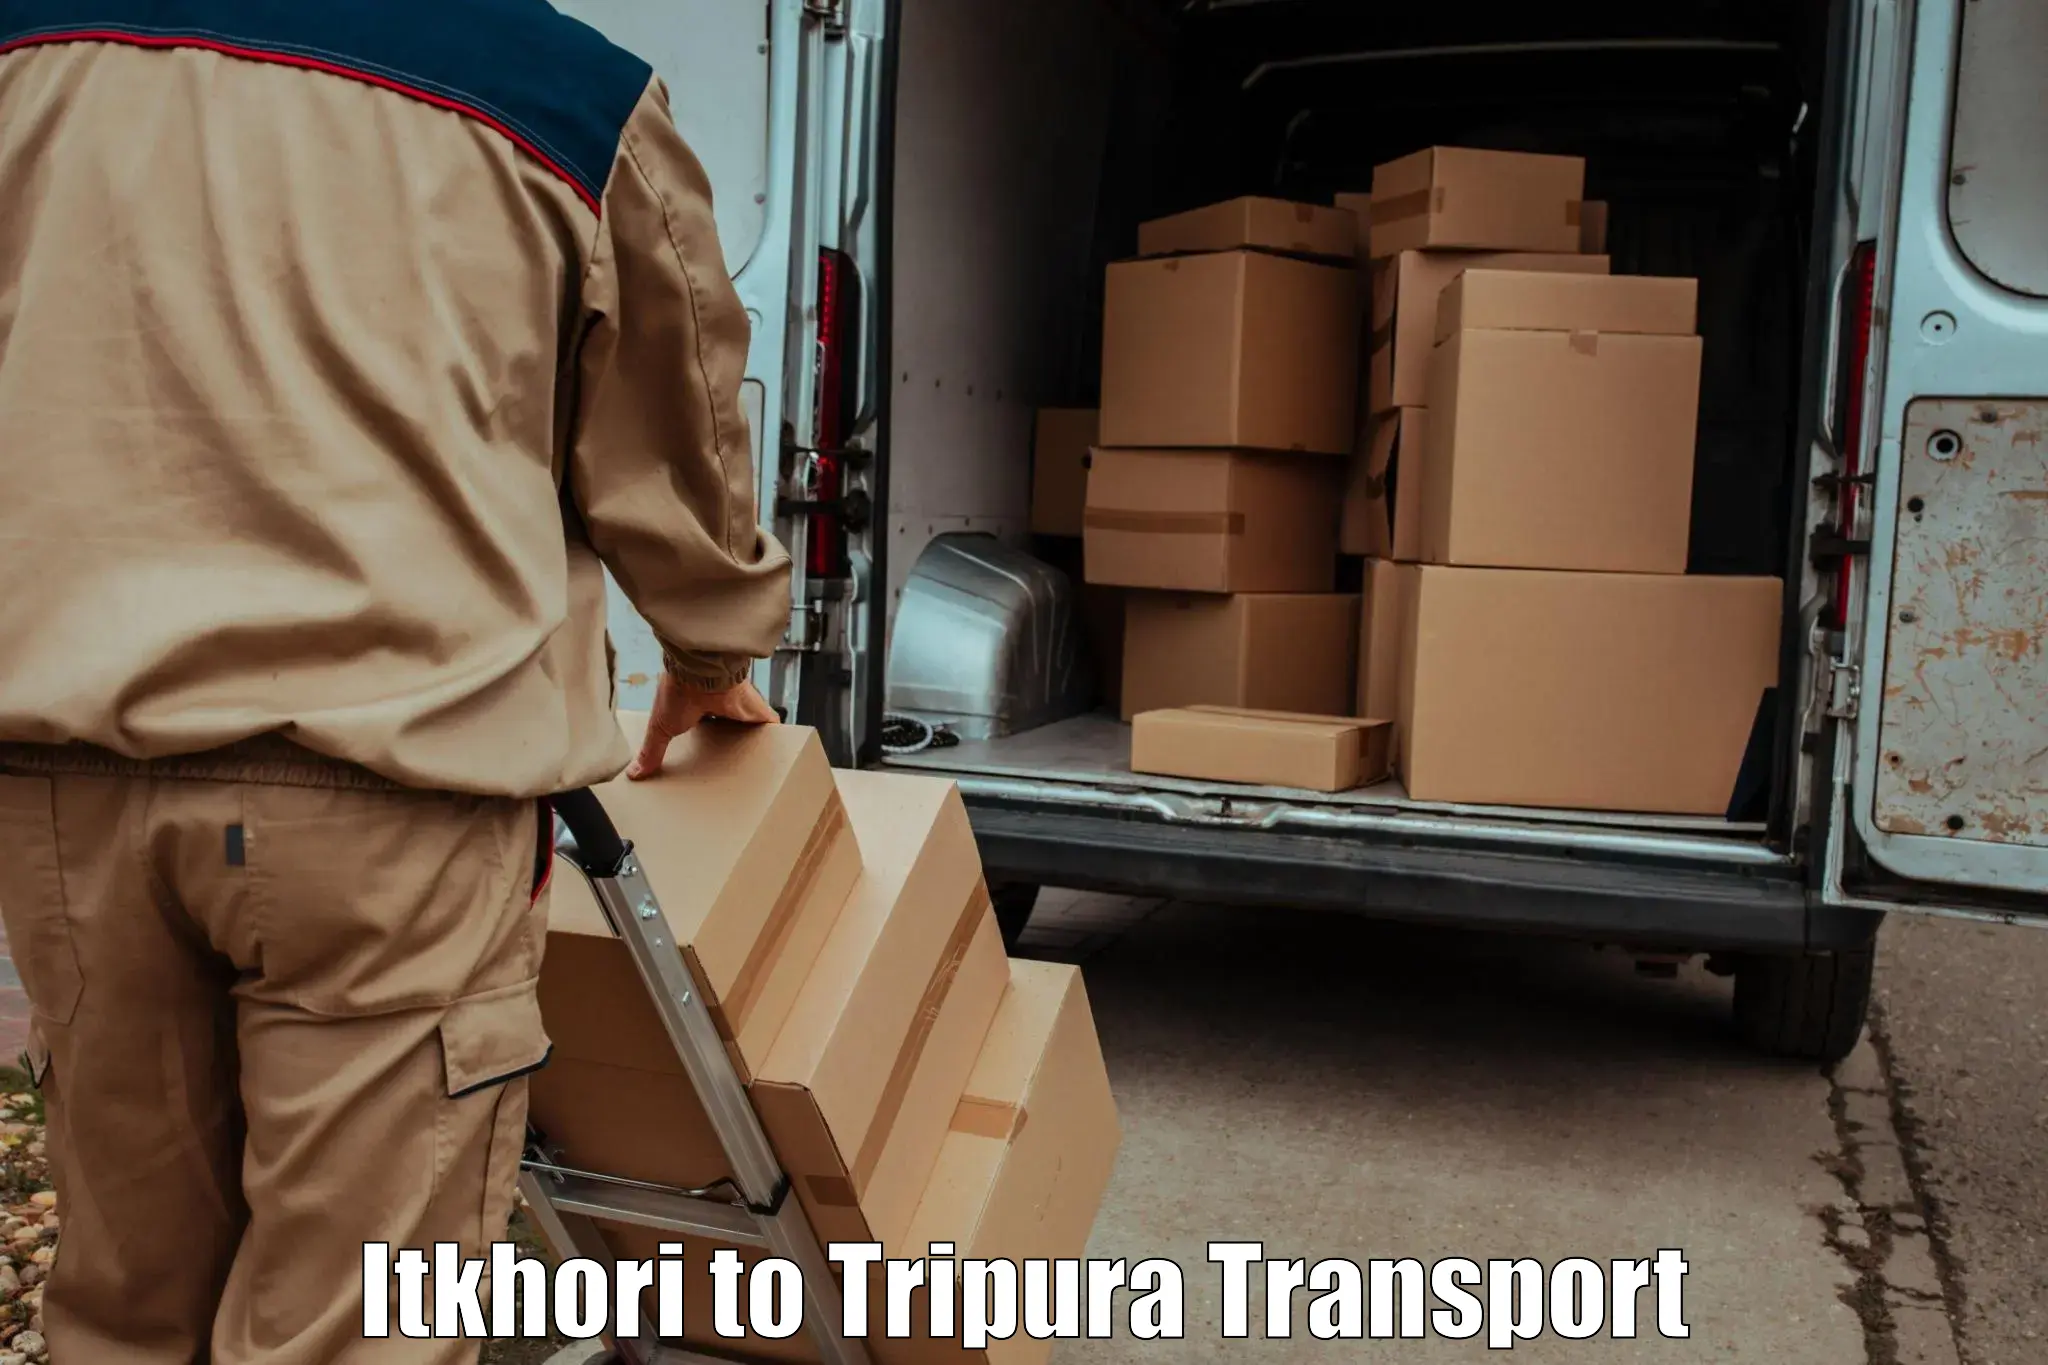 Daily transport service Itkhori to Aambasa